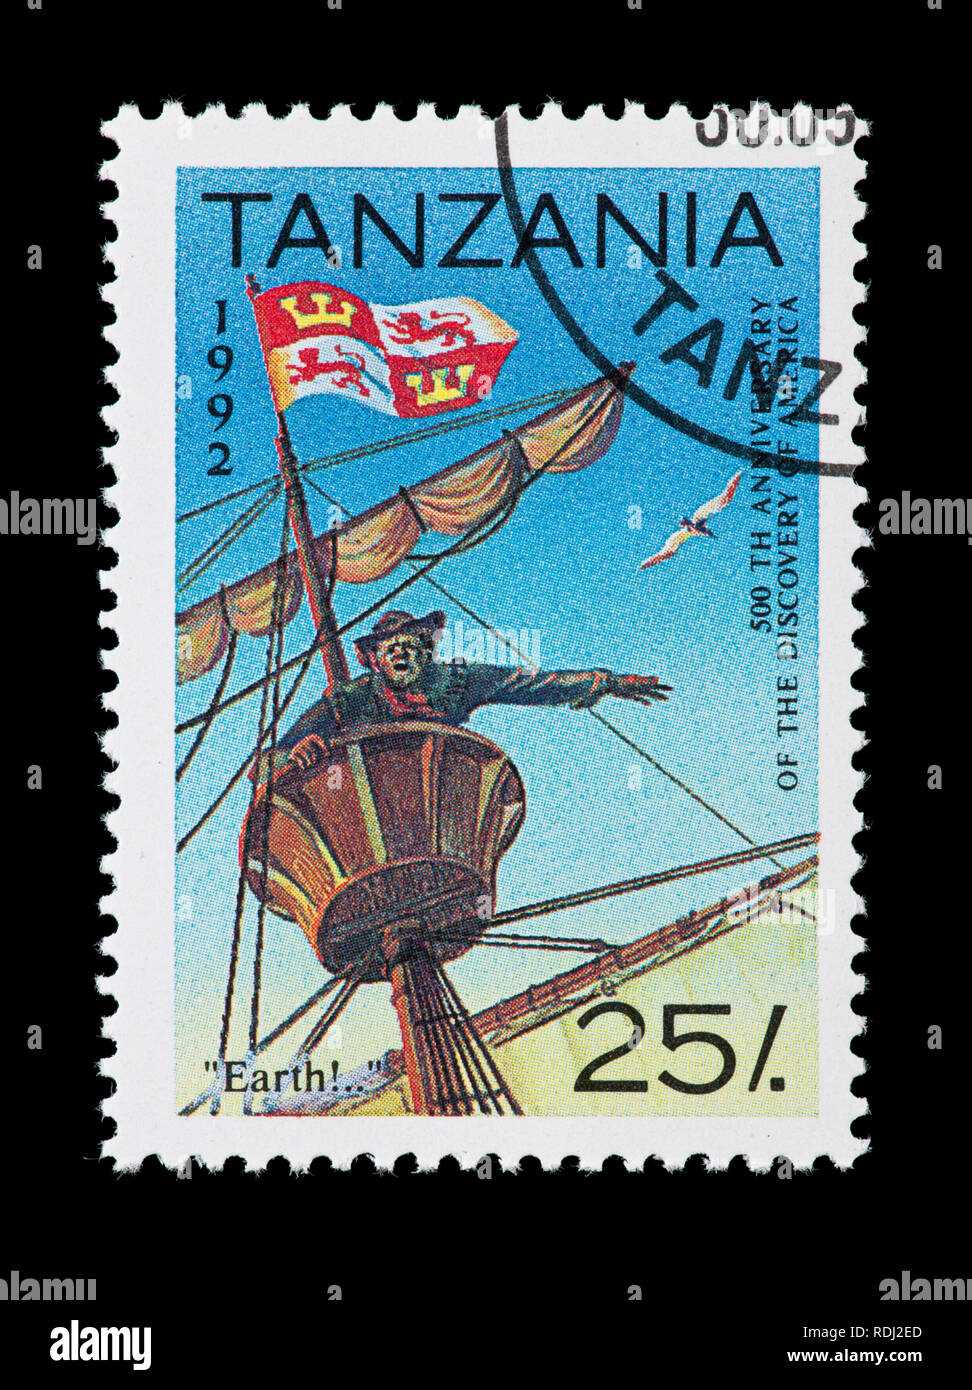 Francobollo dalla Tanzania raffigurante l'avvistamento di terra da Columbus' flotta, il cinquecentesimo anniversario della scoperta del nuovo mondo Foto Stock